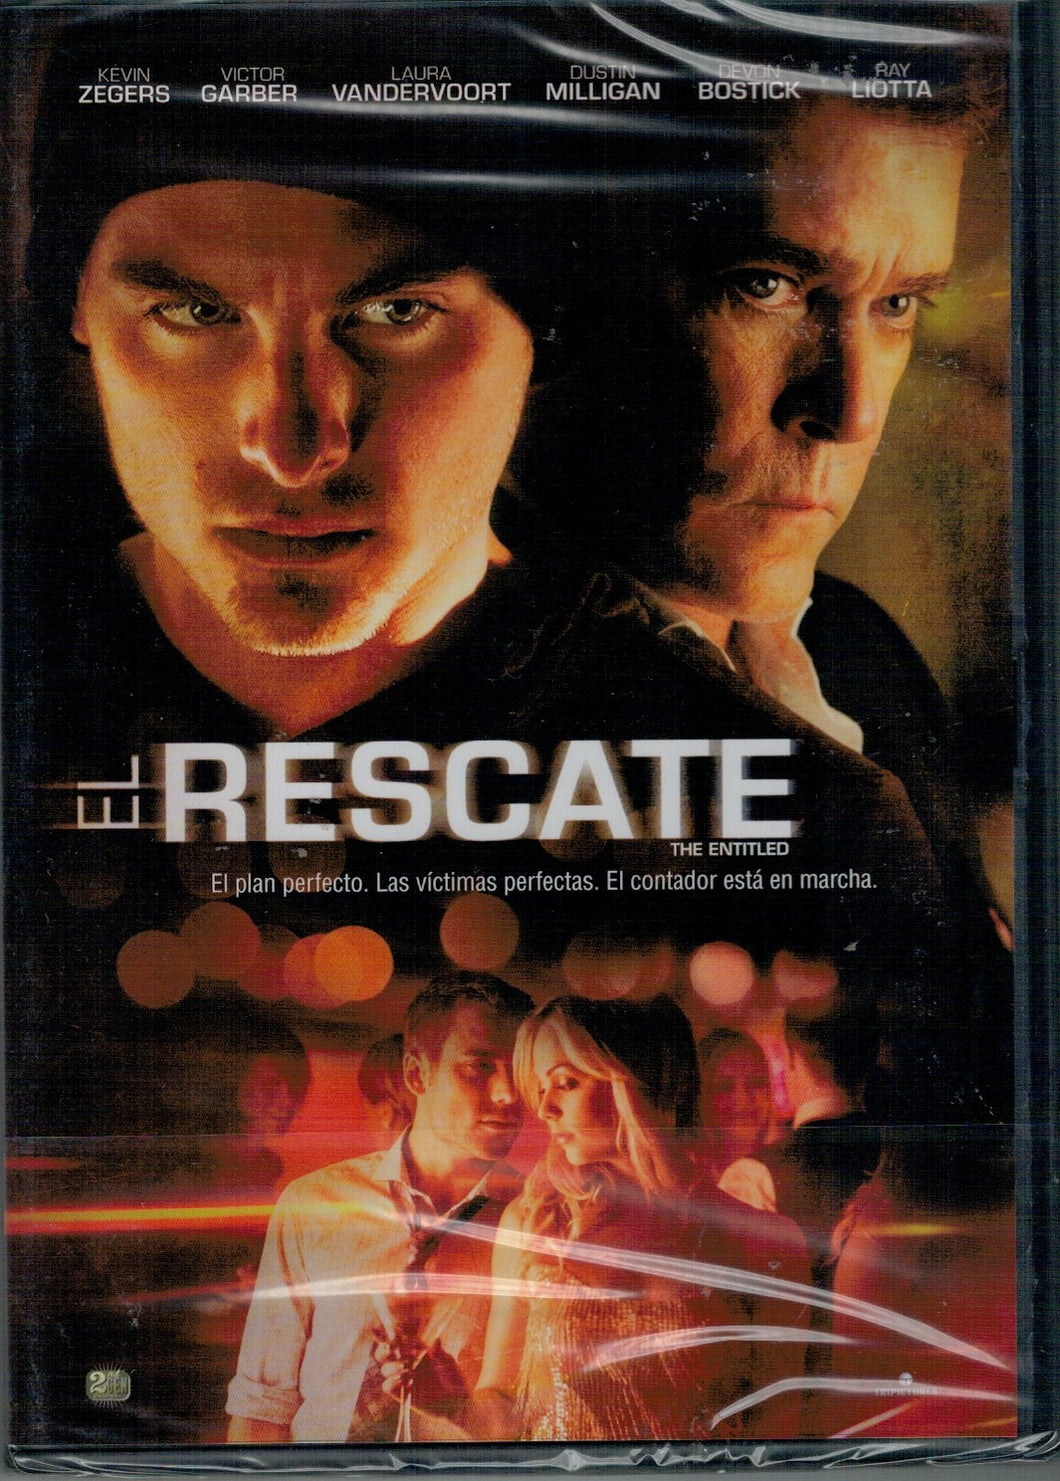 El rescate (The Entitled) (DVD Nuevo)